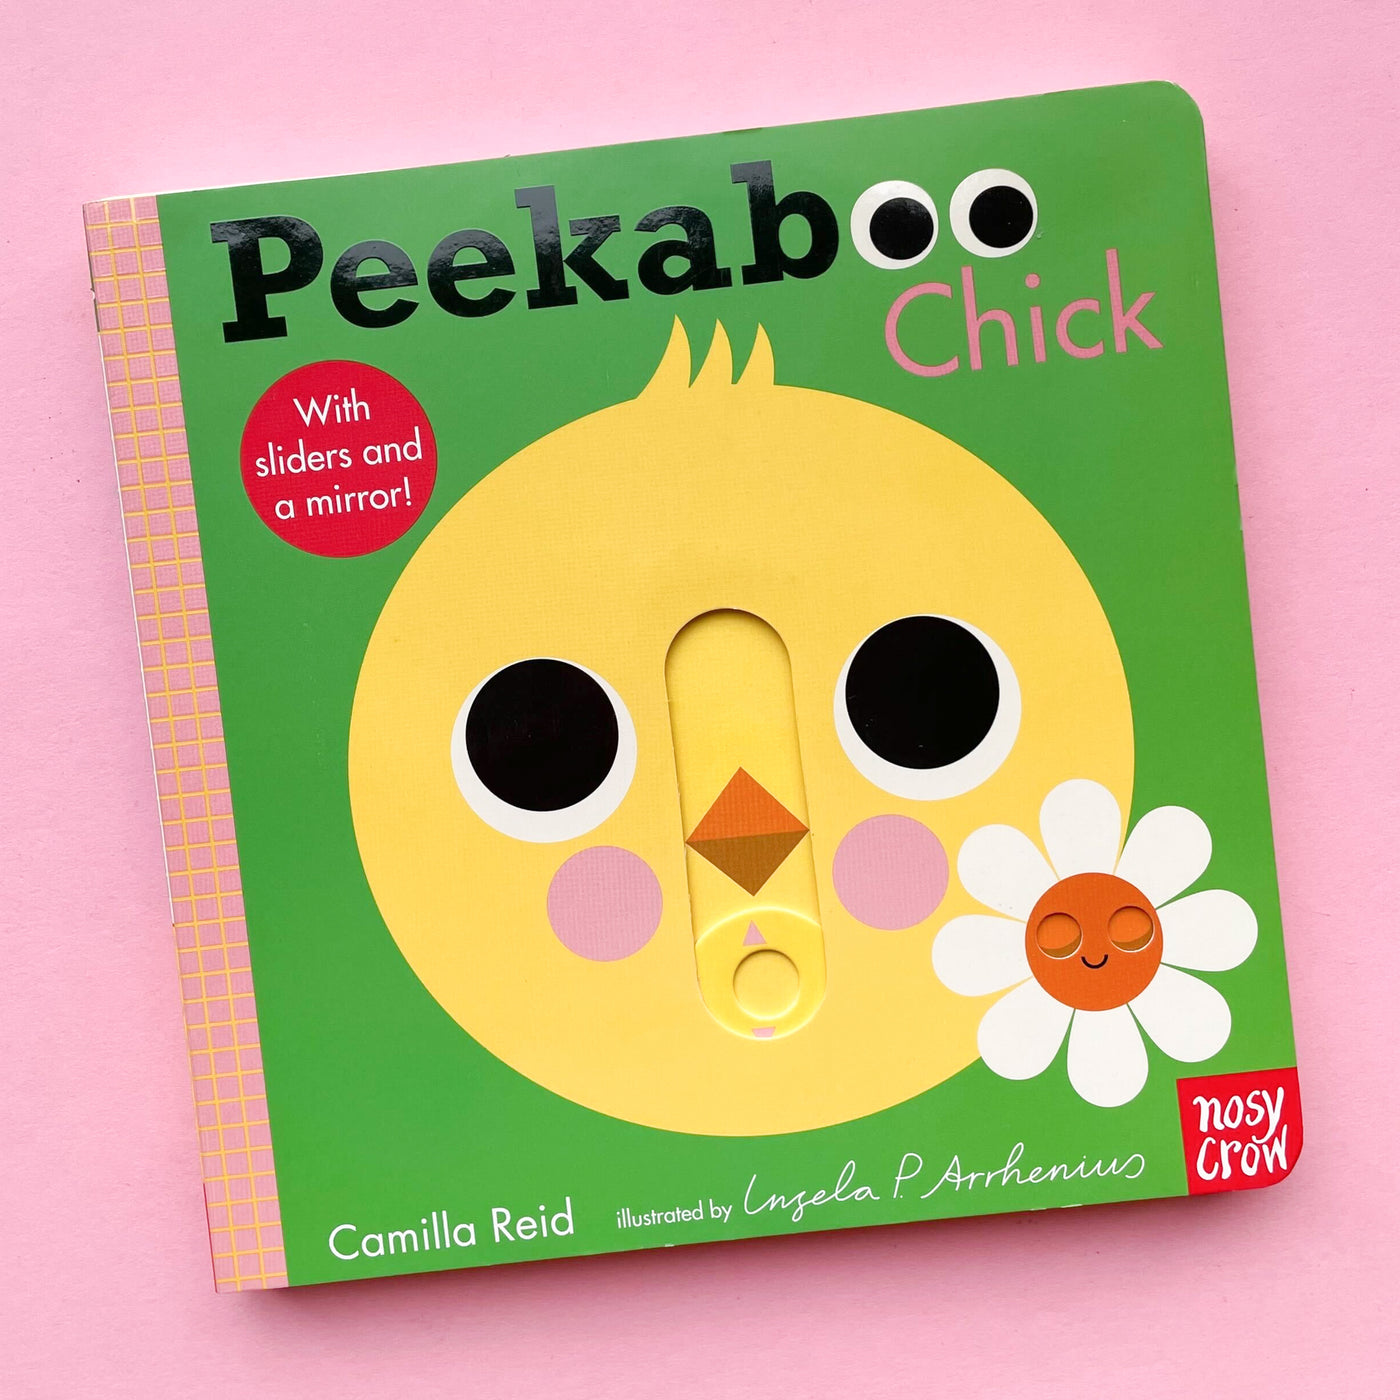 Peekaboo: Chick by Camilla Reid and Ingela P Arrhenius